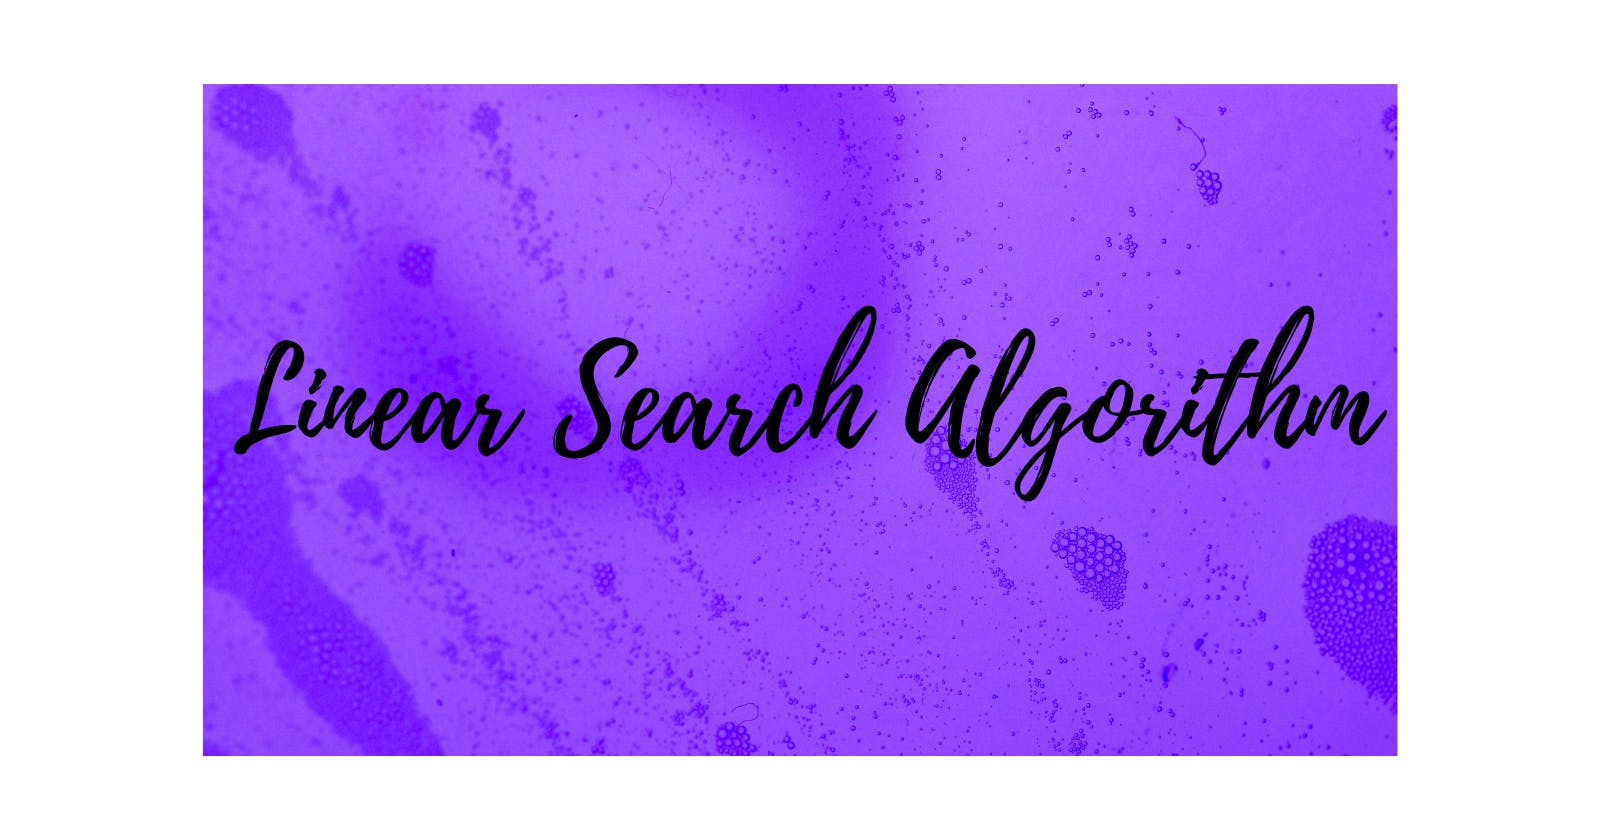 Linear Search Algorithm